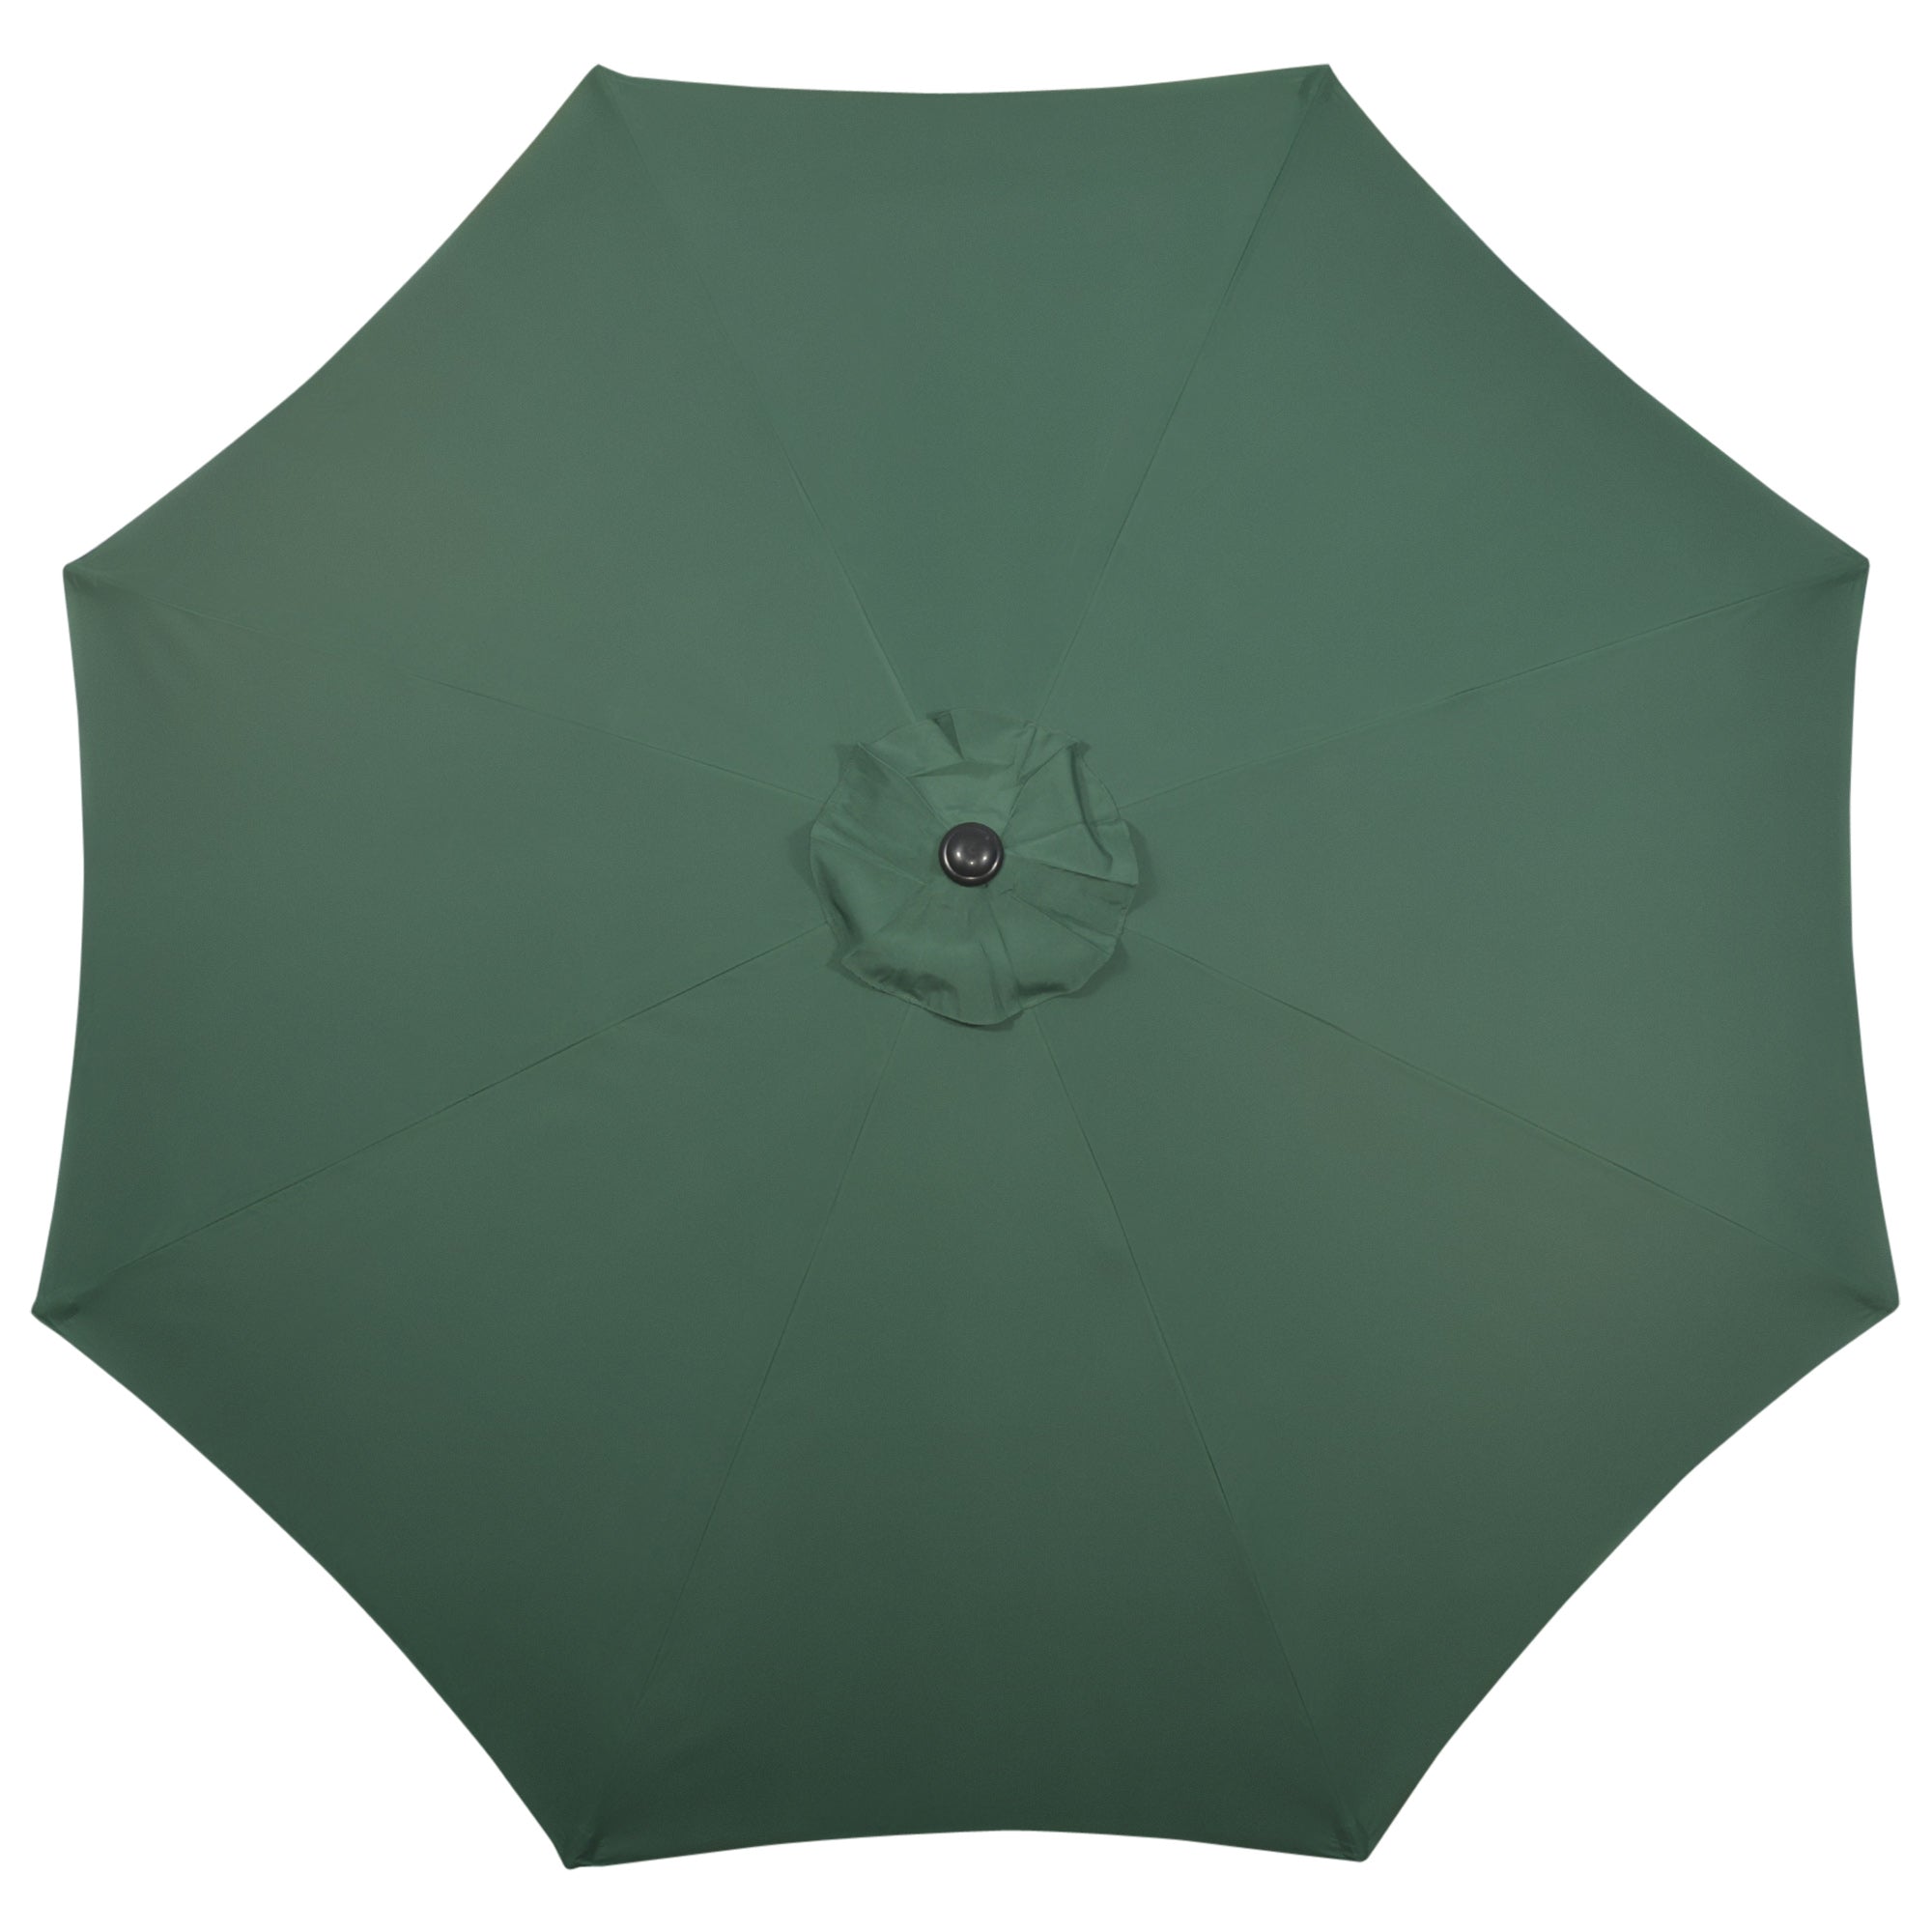 Outsunny Garden Parasol Umbrella, Outdoor Market Table Umbrella Sun Shade Canopy with 8 Ribs, Green